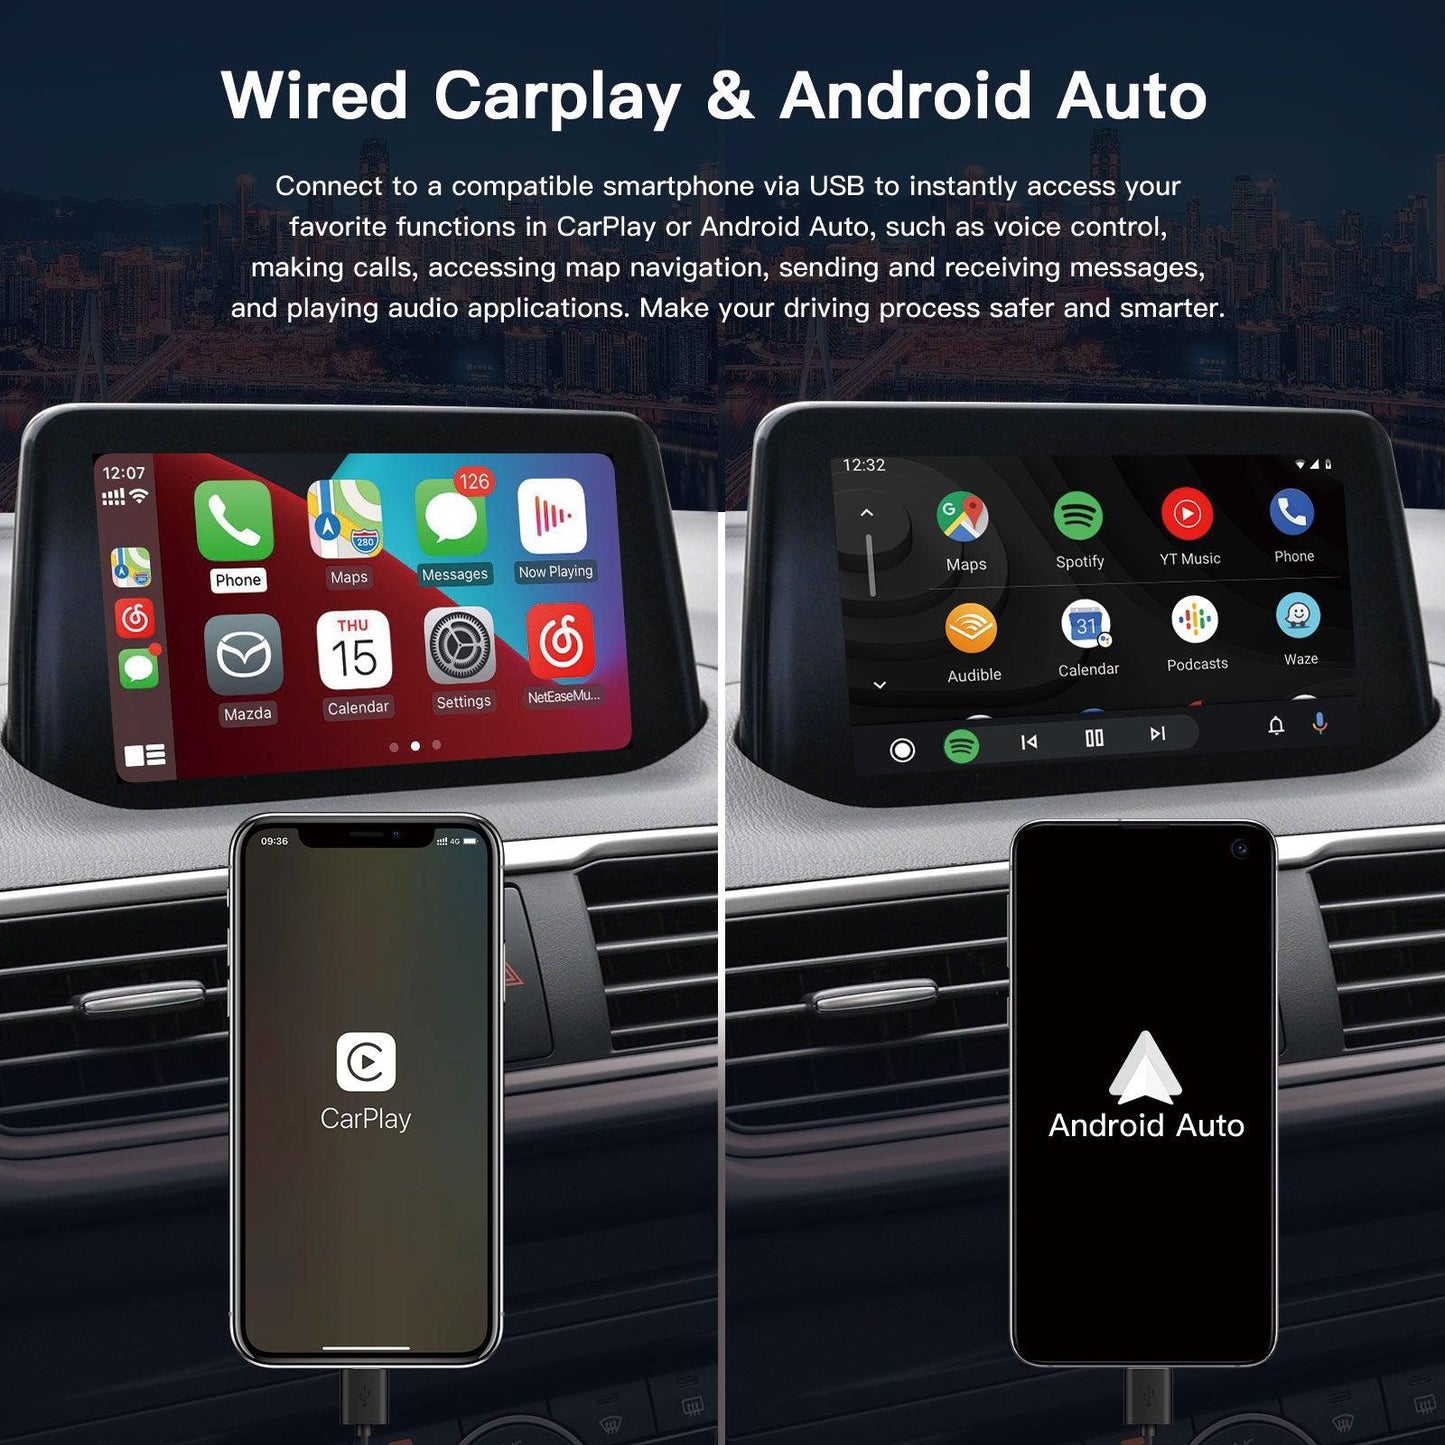 Carplay/Android Auto Adapter for Mazda 2/3/6/CX3/CX5/CX9/MX5/FIAT 124 2014-2021 TK78-66-9U0C OEM Hub Retrofit Kit Fits MZD Connect System 00008FZ34 - AUTOabc